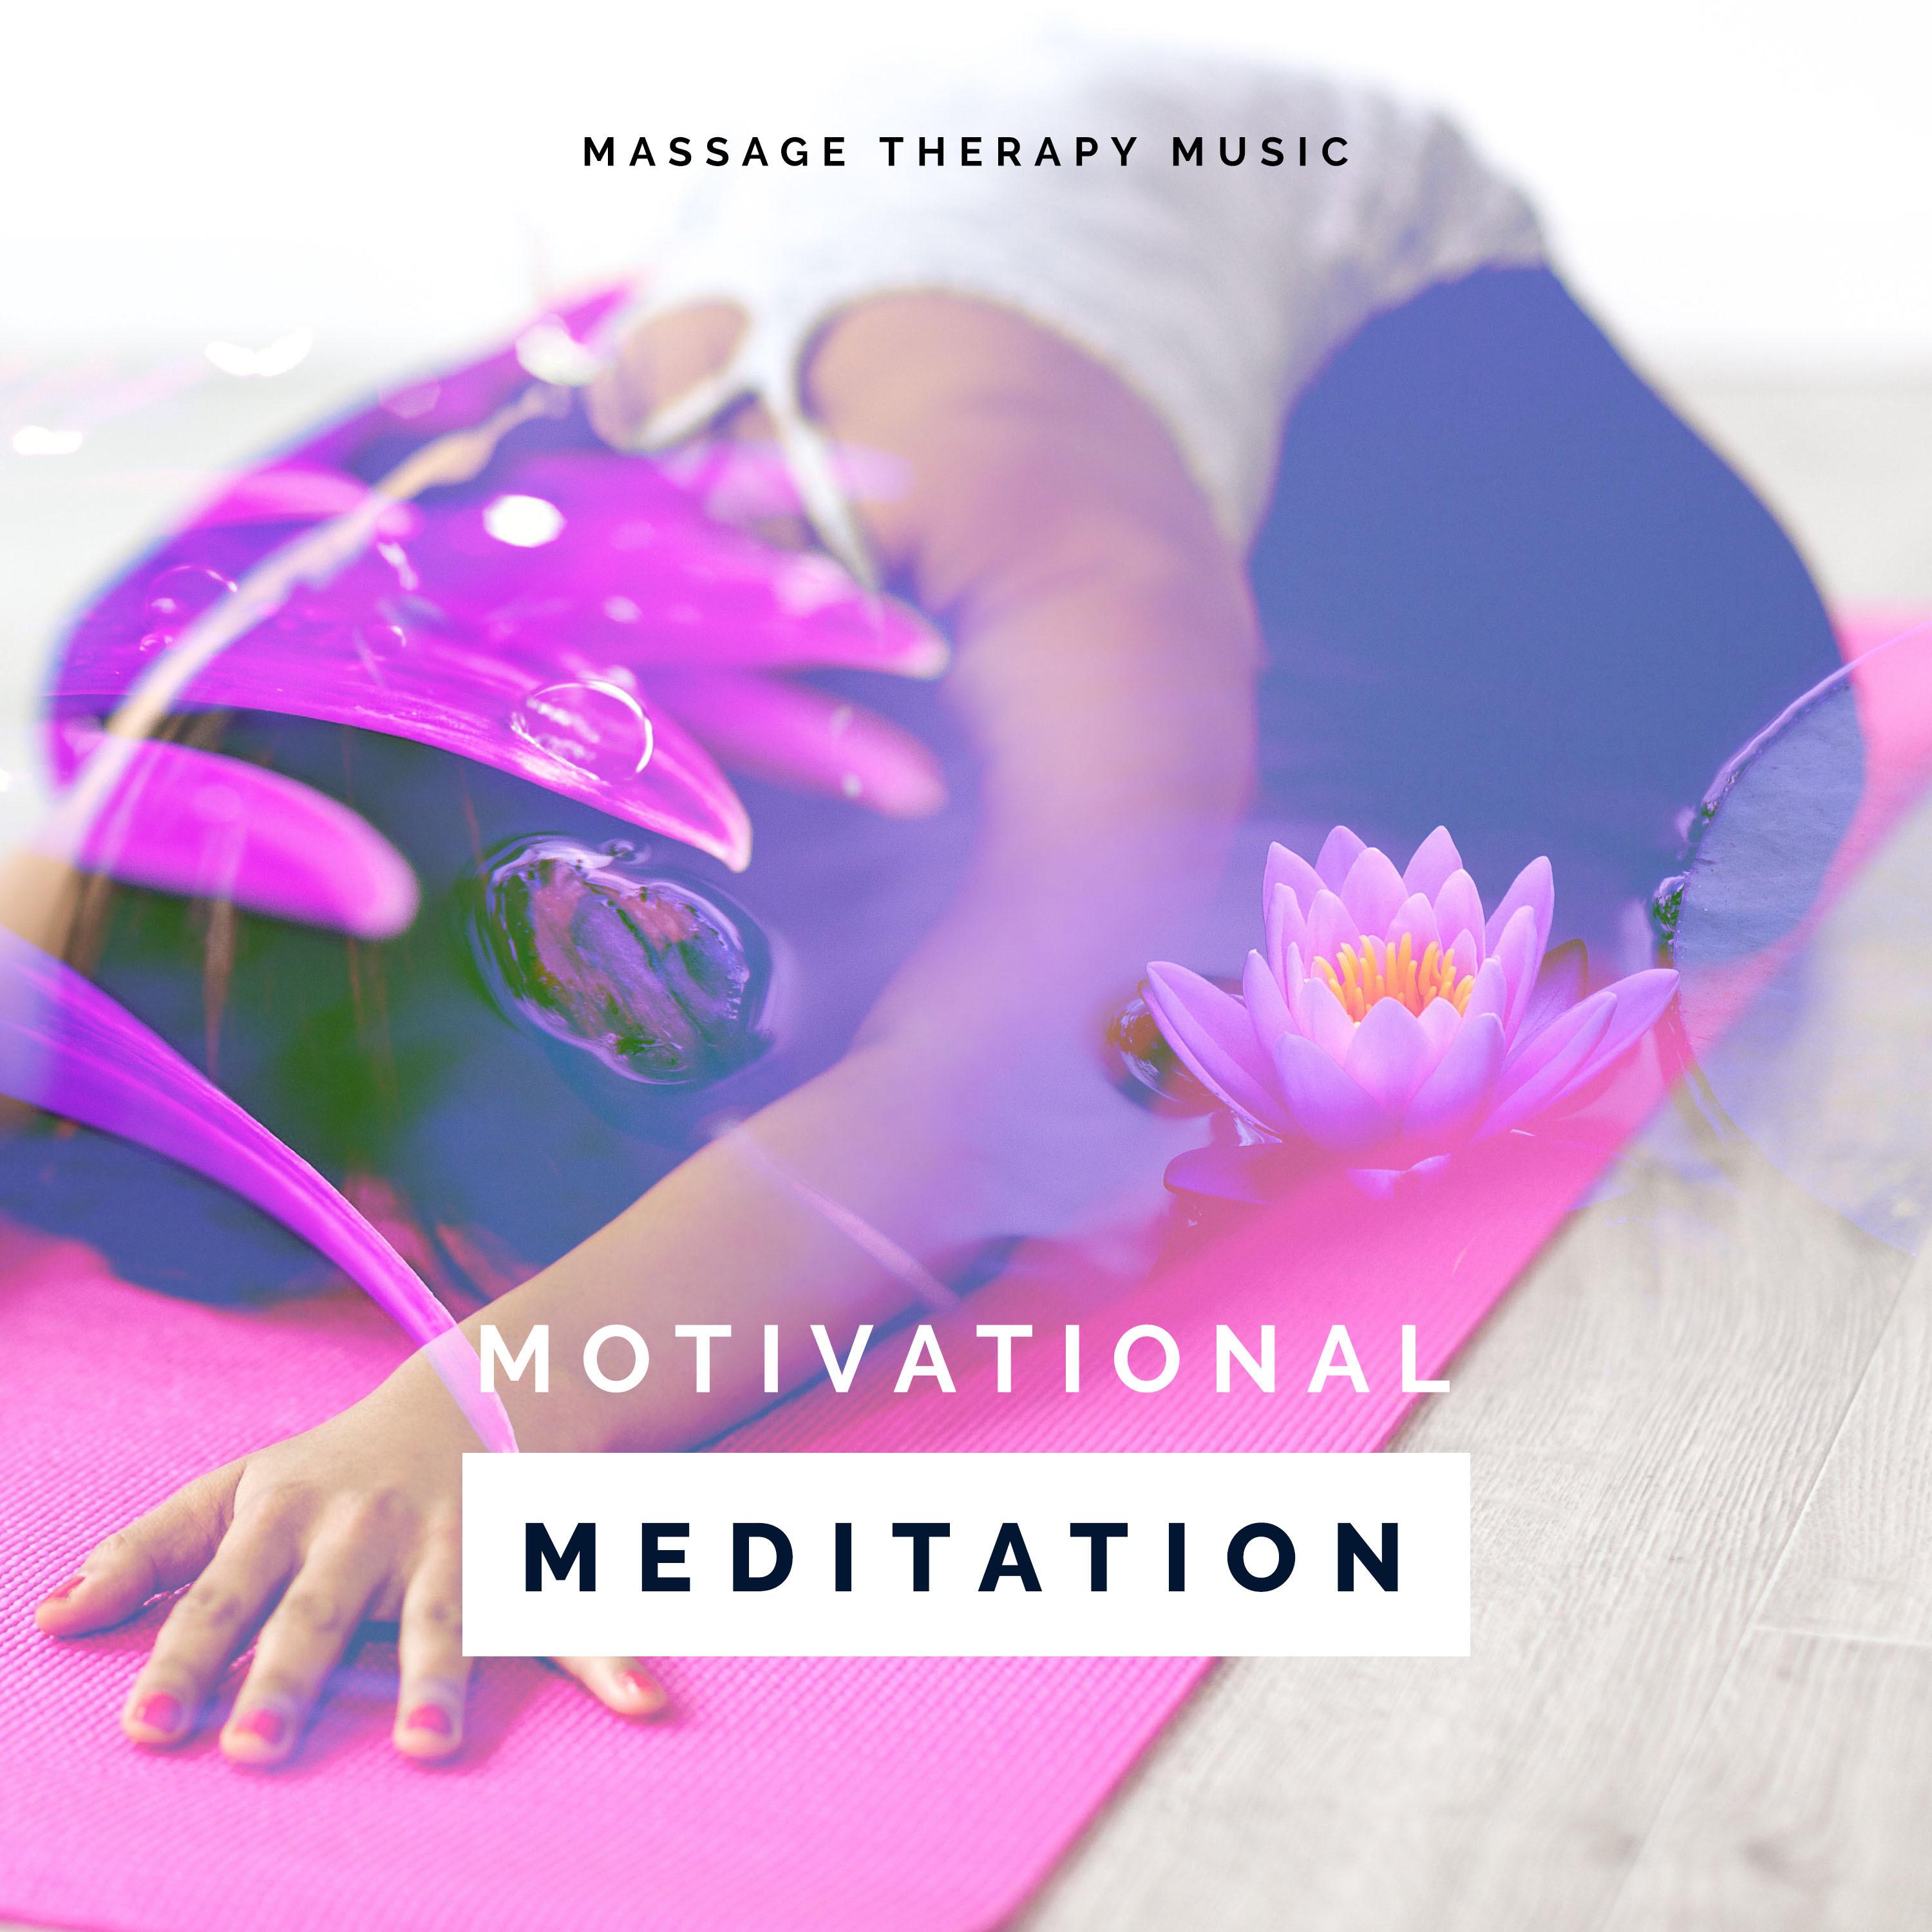 Motivational Meditation